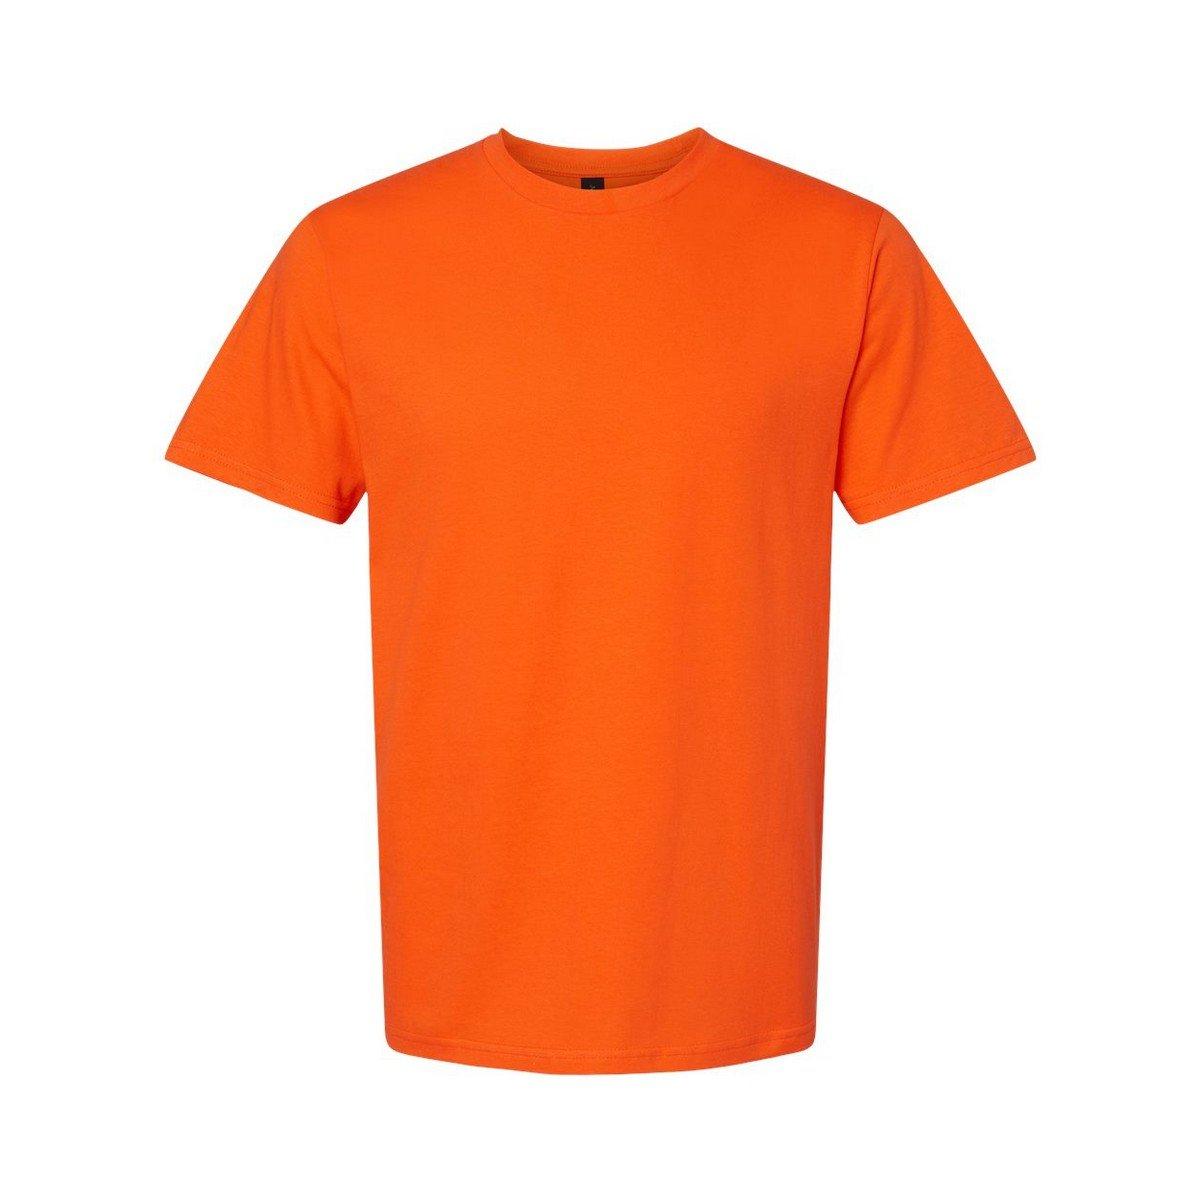 Softstyle Tshirt Mittelschwer Herren Orange L von Gildan